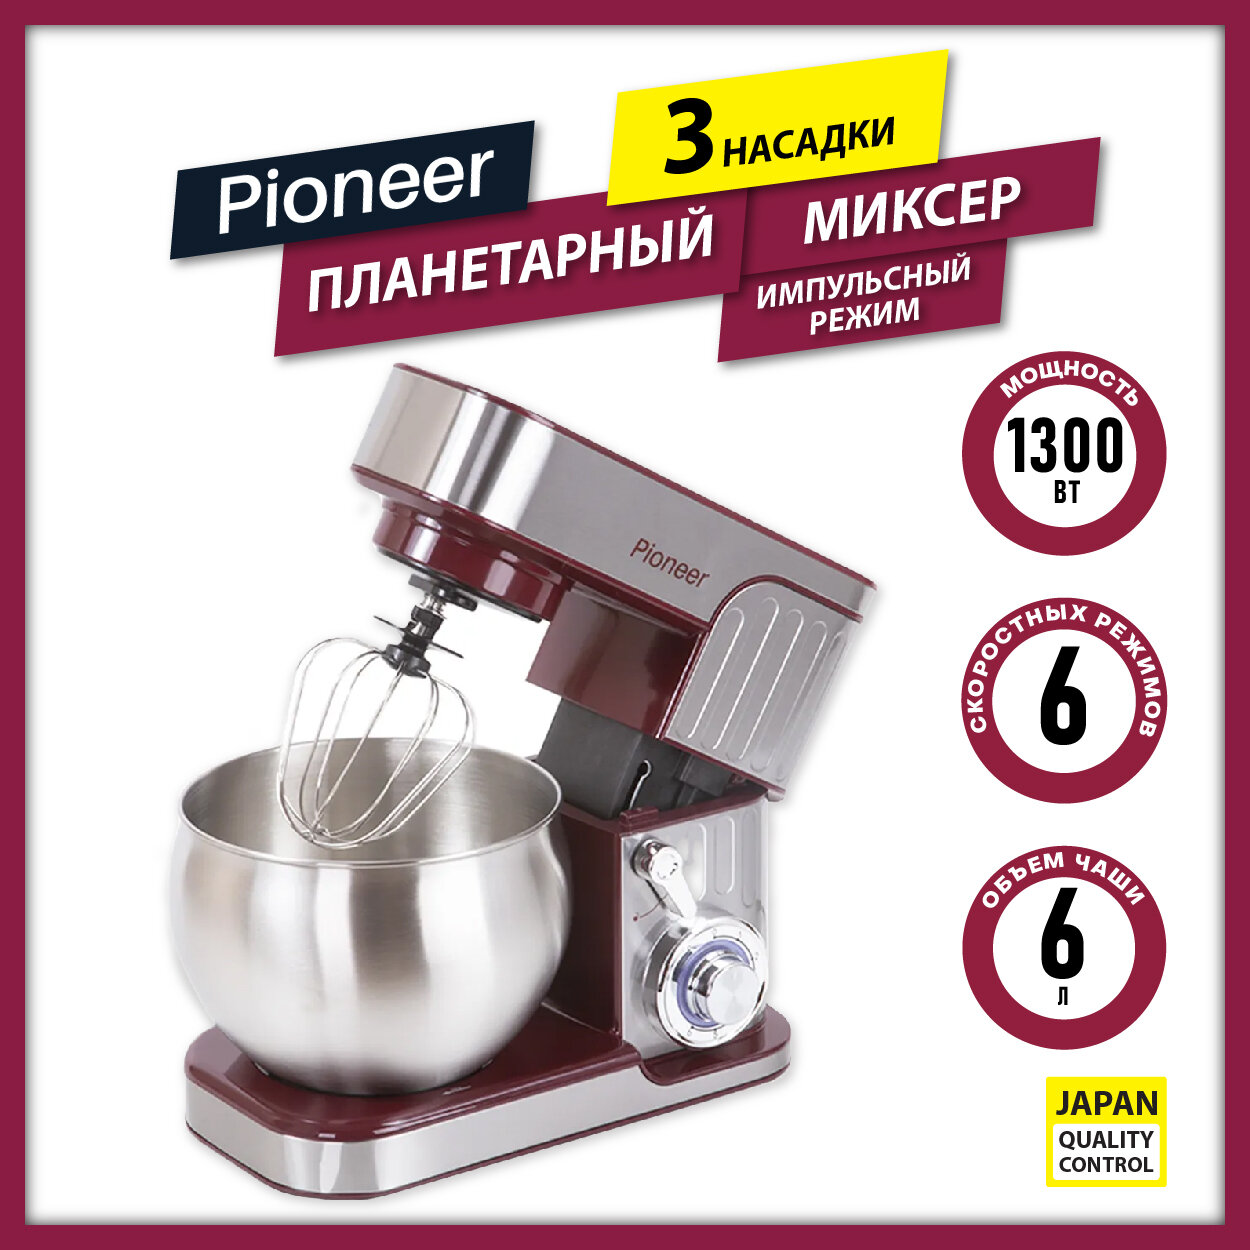 Миксер планетарный Pioneer MX330 wine maroon, кухонная машина с 3 насадками, чаша объемом 6 л, LED-индикация, импульсный режим, 1300 Вт